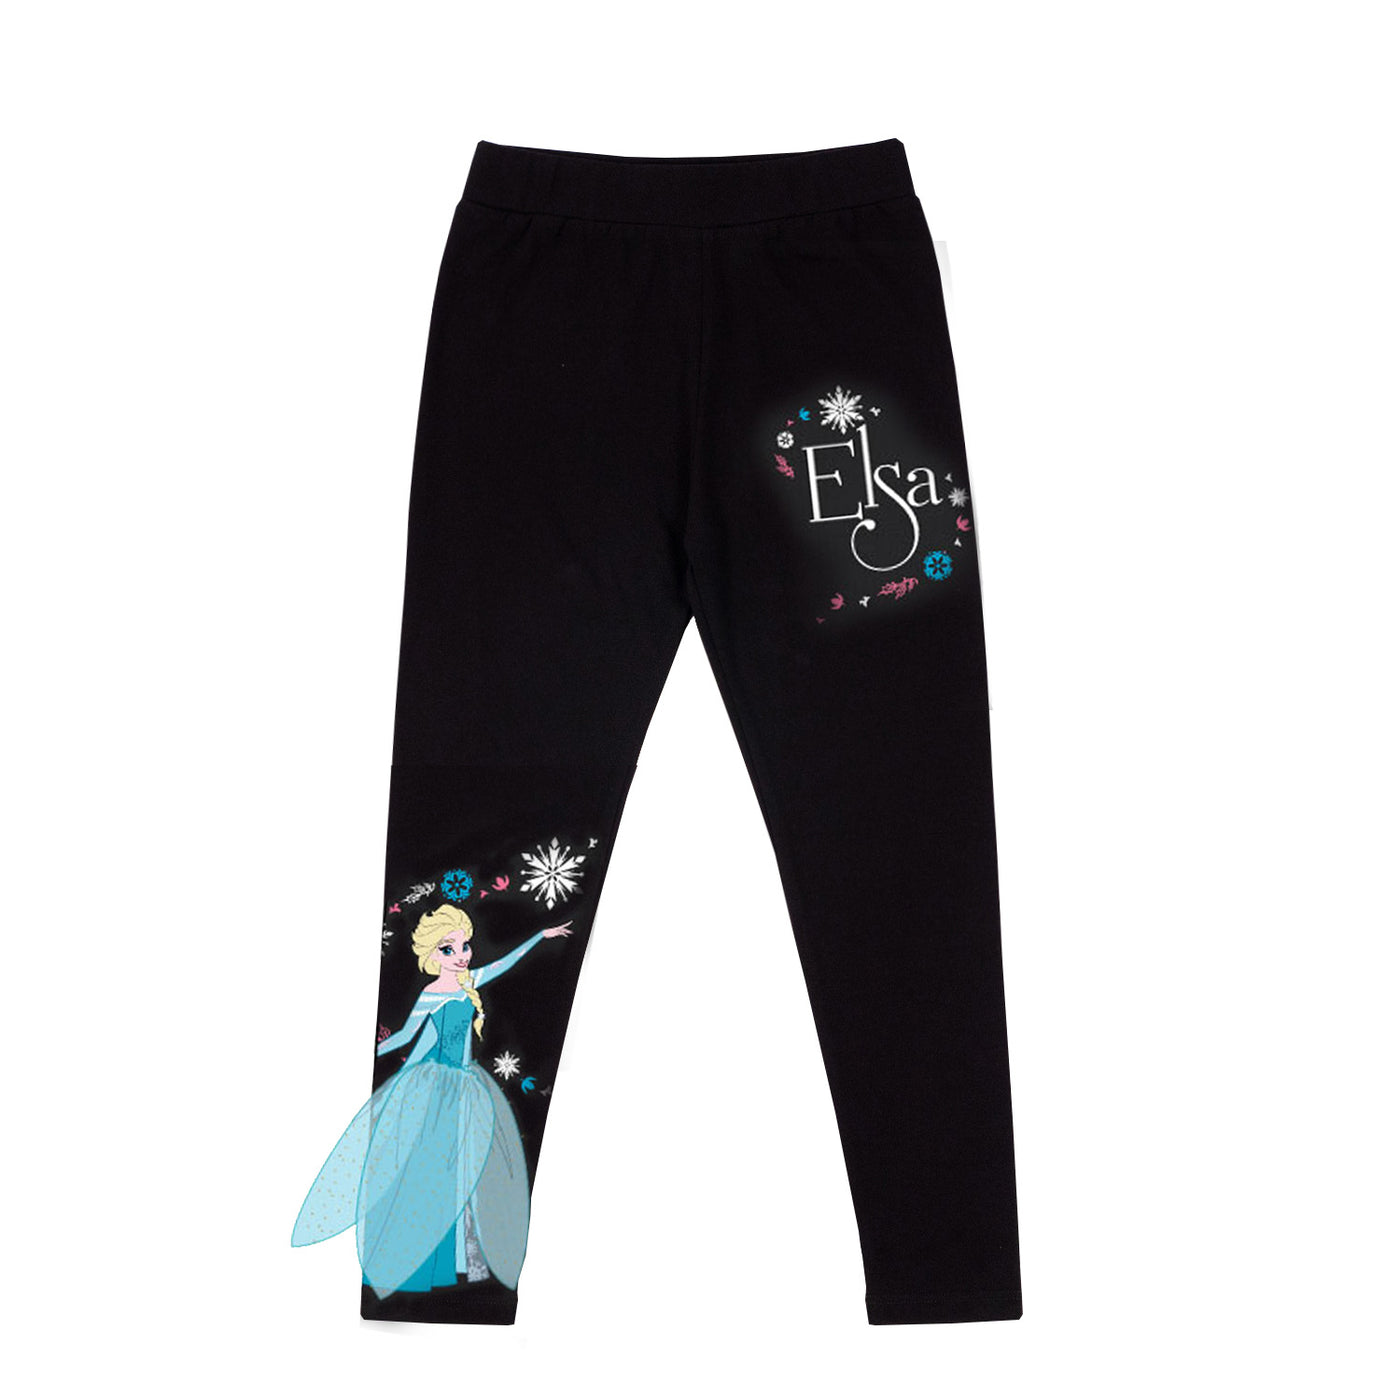 Disney Girl Frozen Elsa  T-Shirt and Legging - เสื้อยืดเด็กผู้หญิงโฟร่เซ่น มีกระเป๋า และเลกกิ้ง เจ้าหญิงเอลซ่า (ราคาต่อสินค้า 1 ชิ้น)